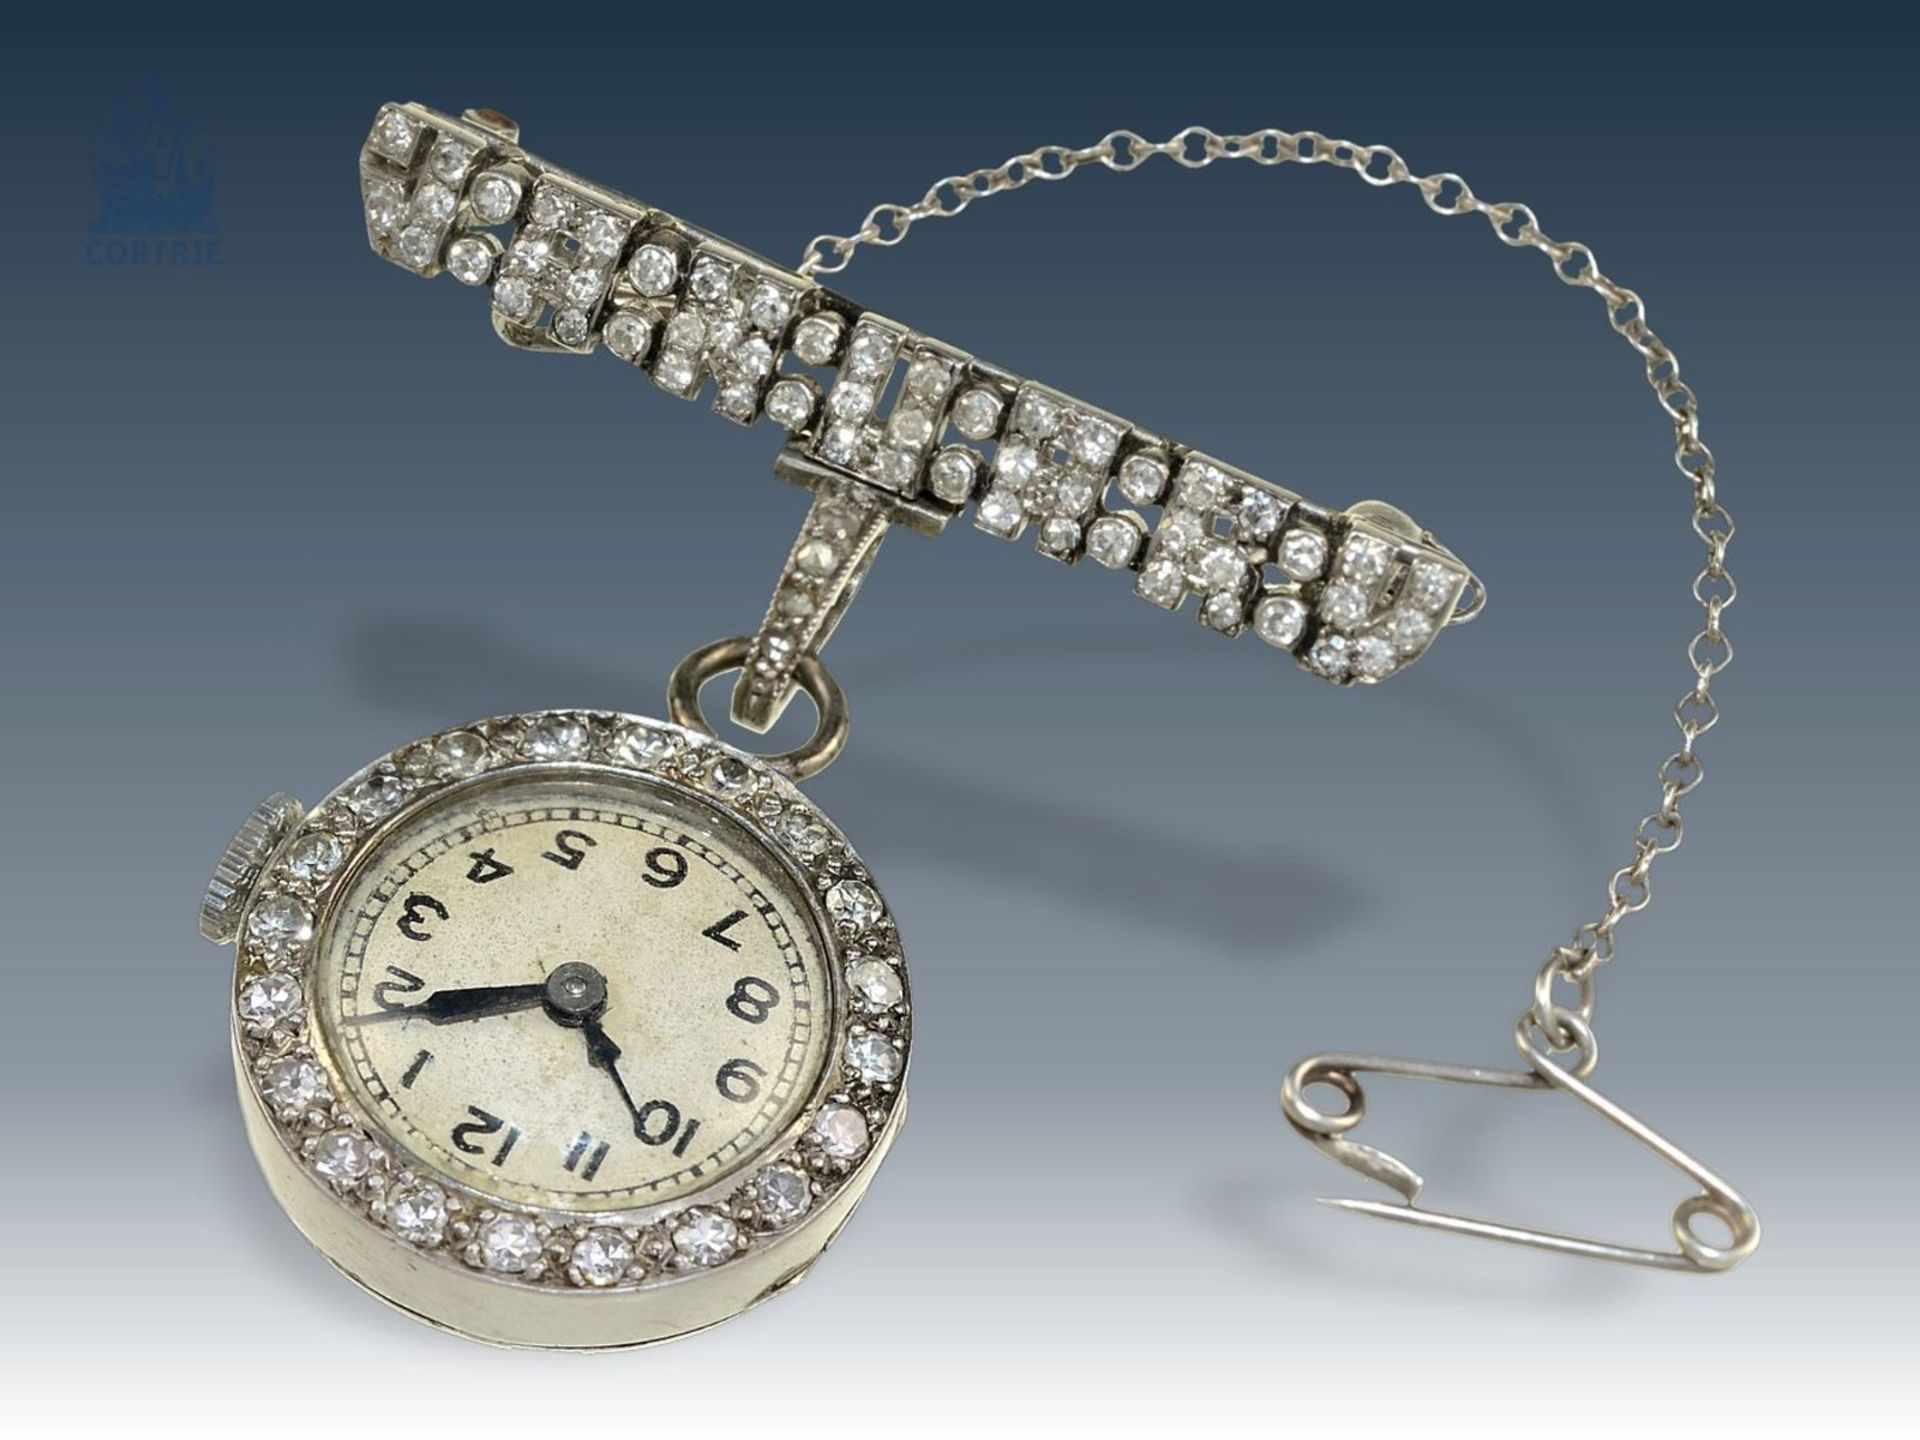 Anhängeuhr/Broschenuhr: seltene und hochfeine Art déco Diamant-Uhr mit Platingehäuse und Brosche - Bild 2 aus 4